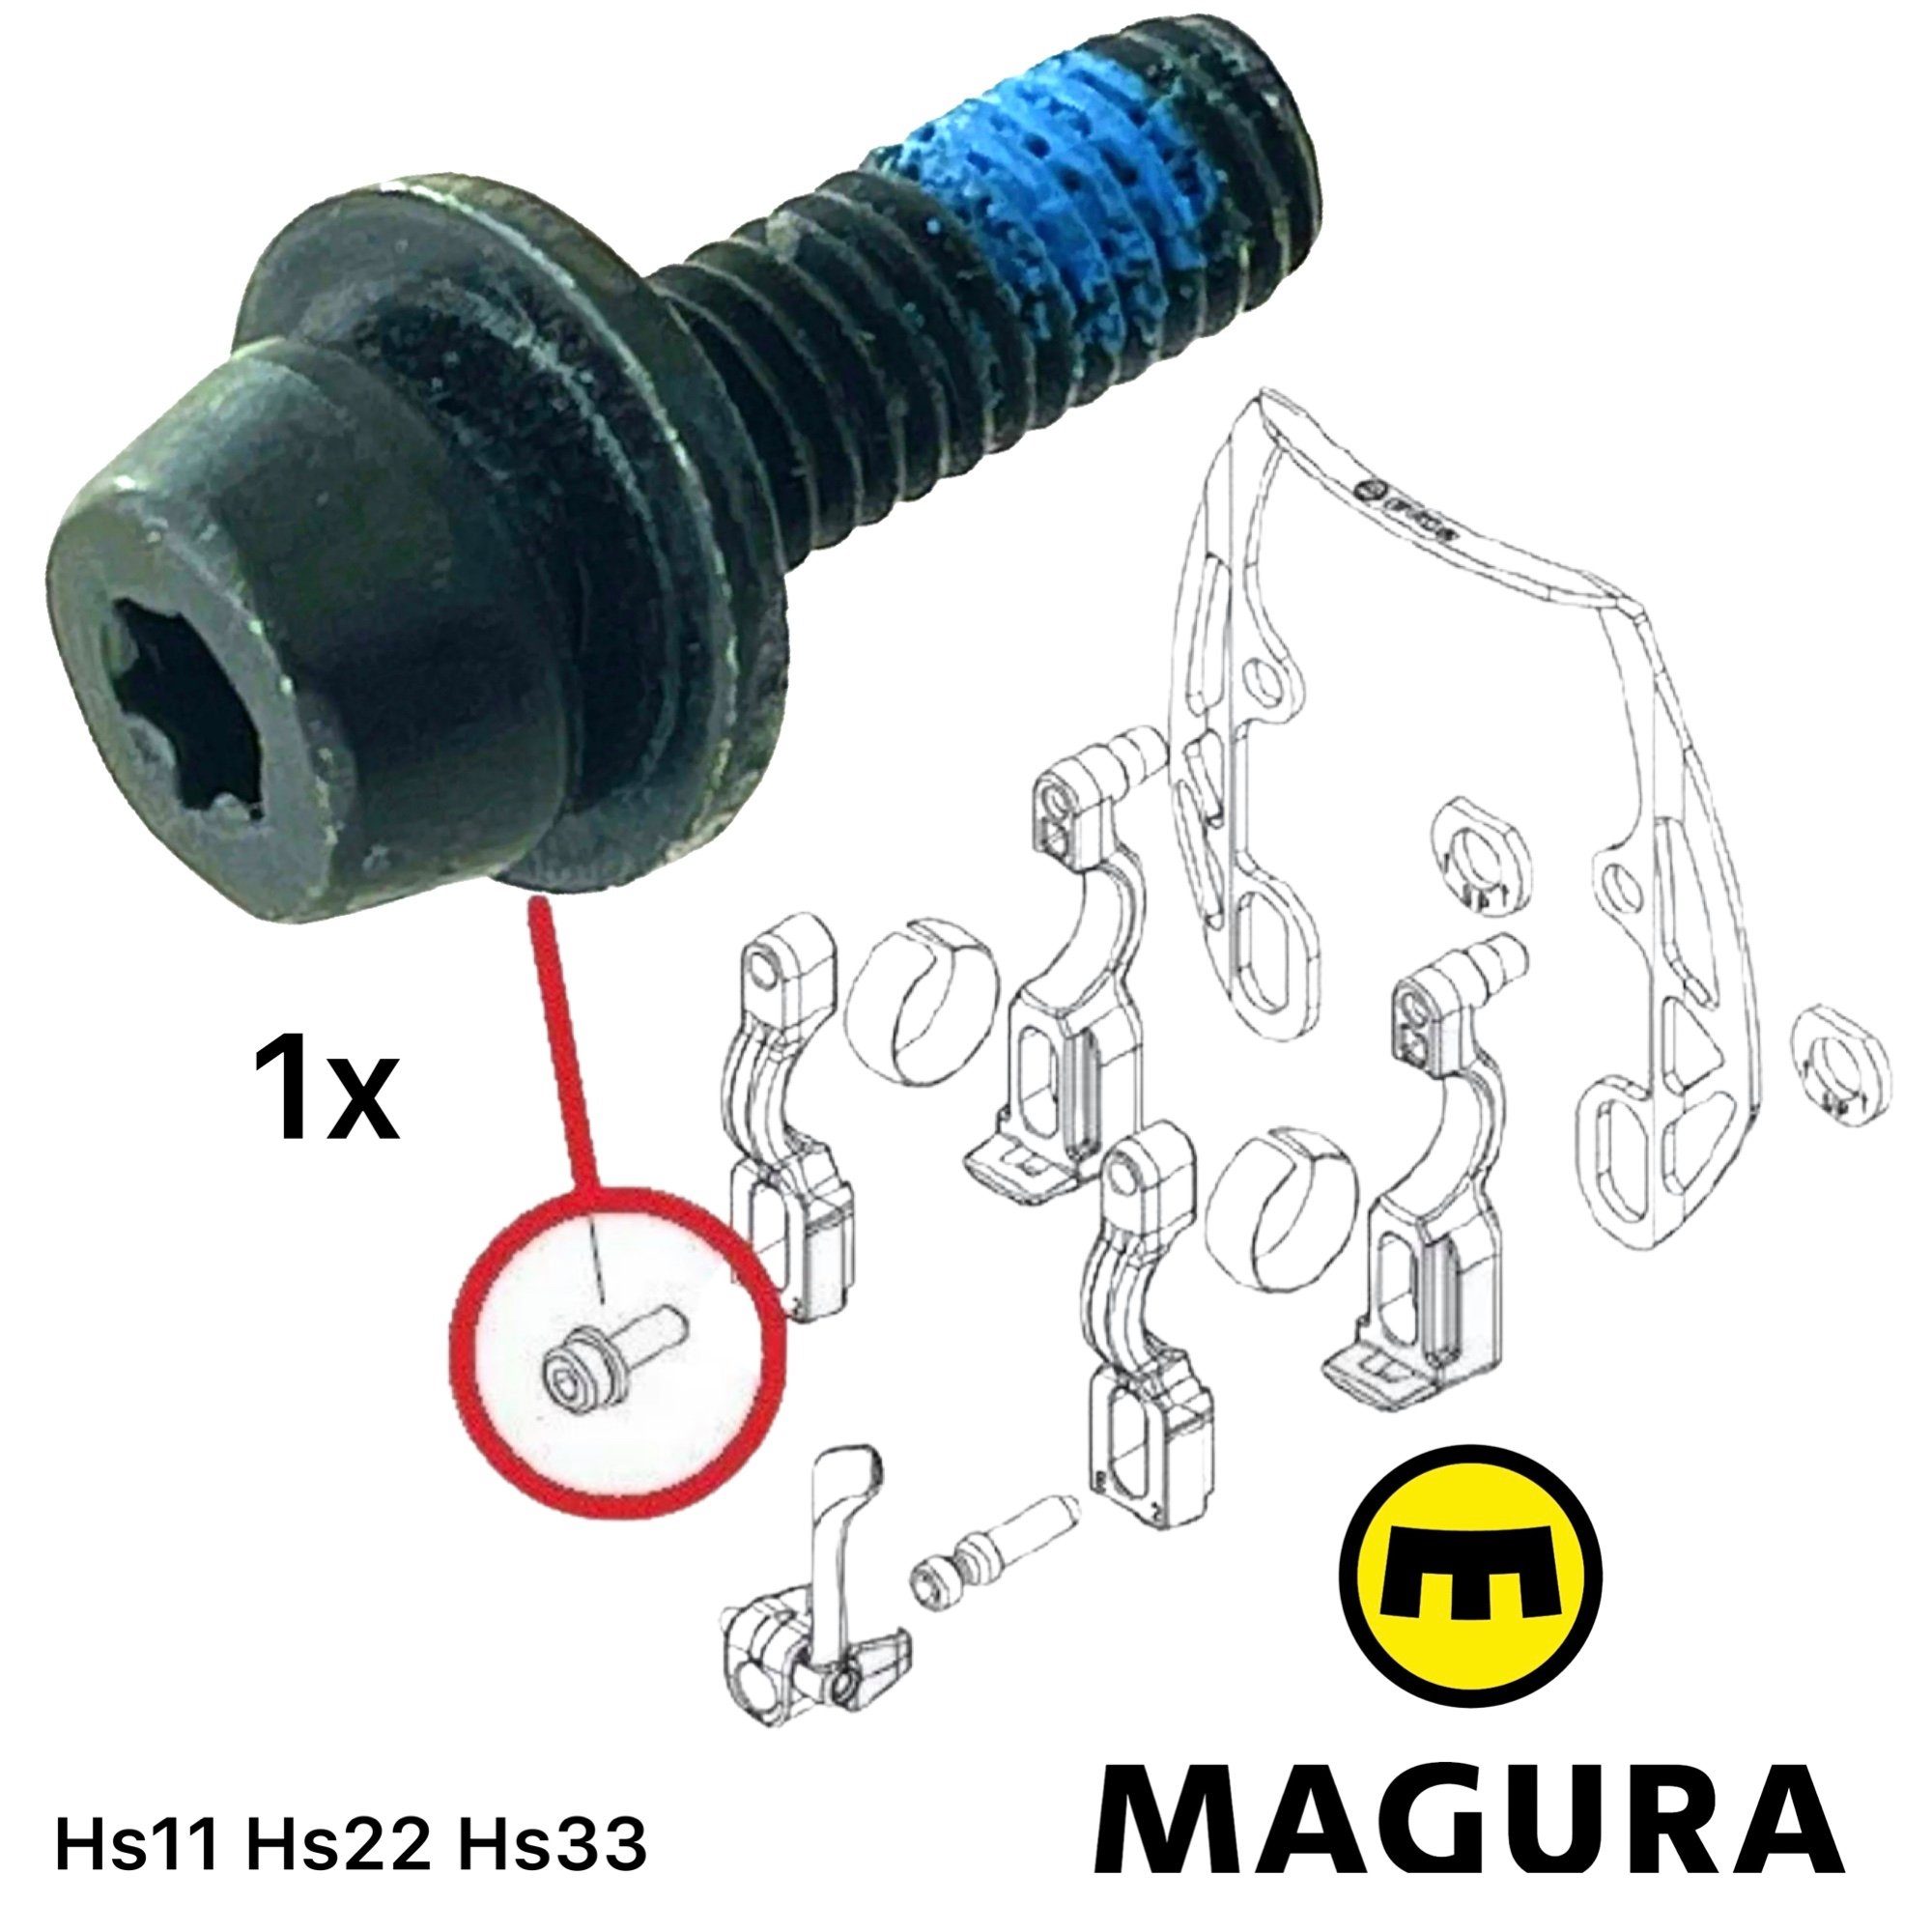 M6 T25 Bremszylinder Torx für (0720934) Befestigungsschraube Felgenbremse Magura Magura 1x